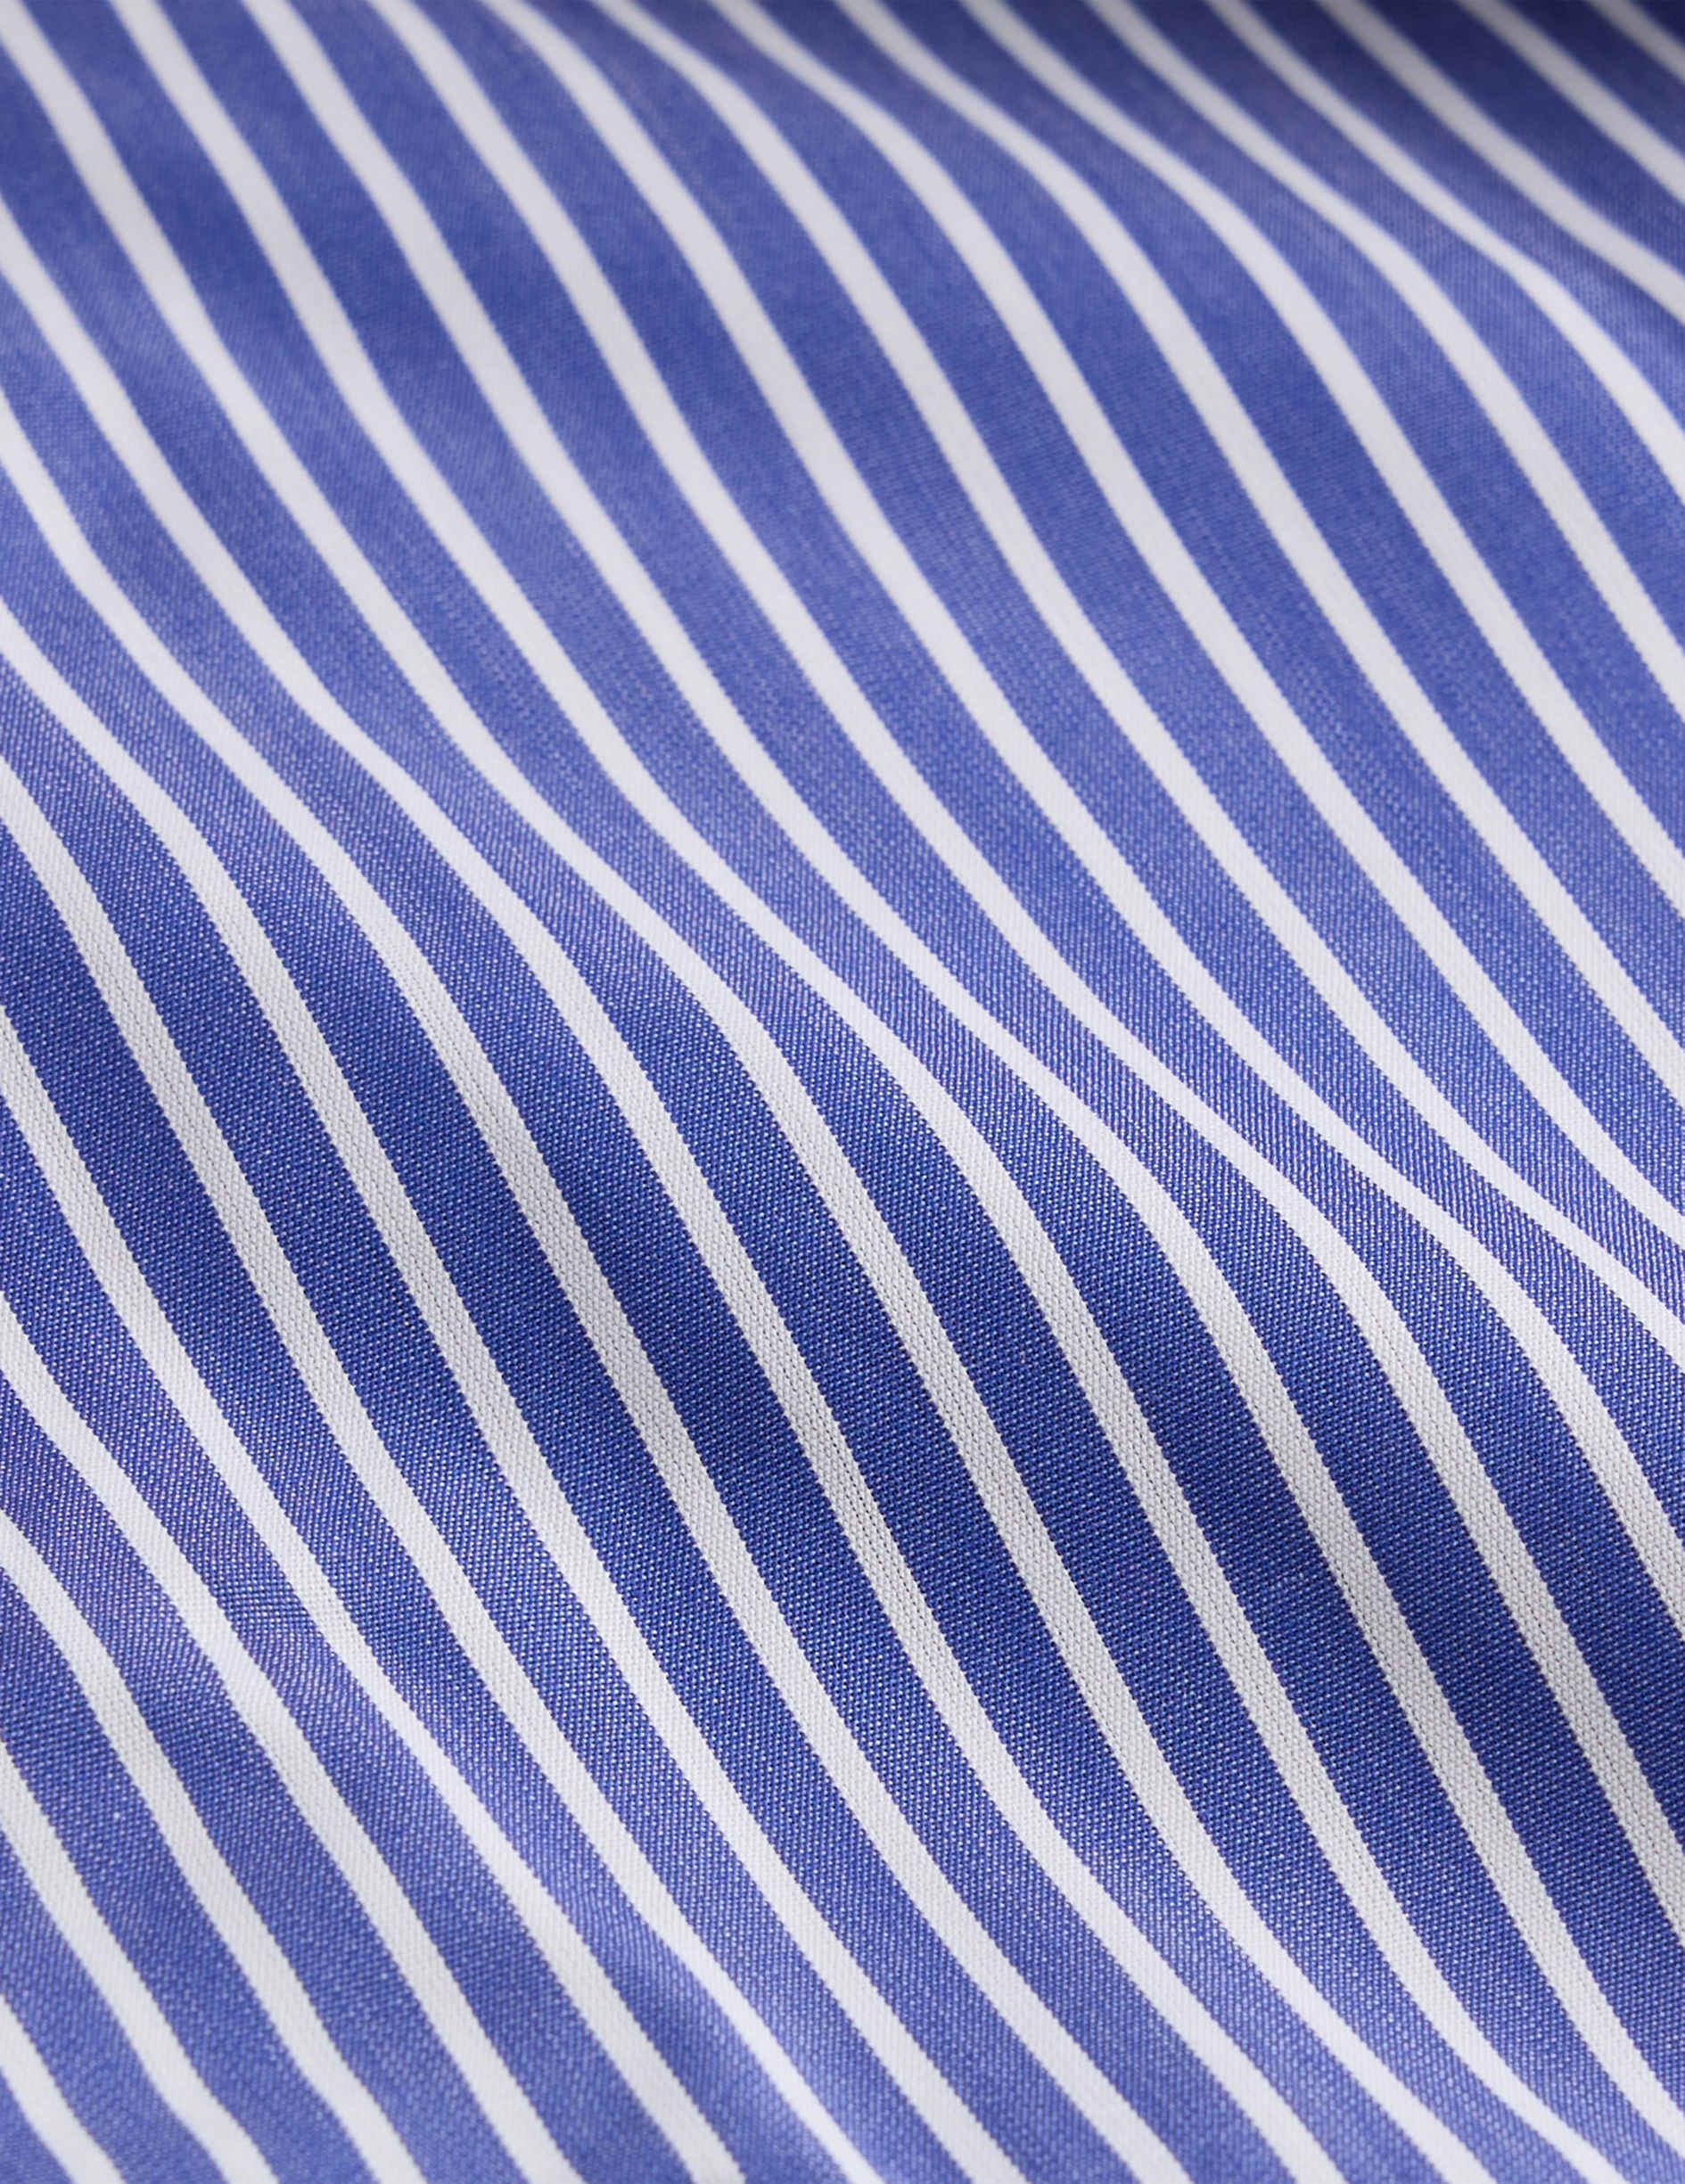 Chemise Semi-ajustée rayée bleue - Popeline - Col Figaret